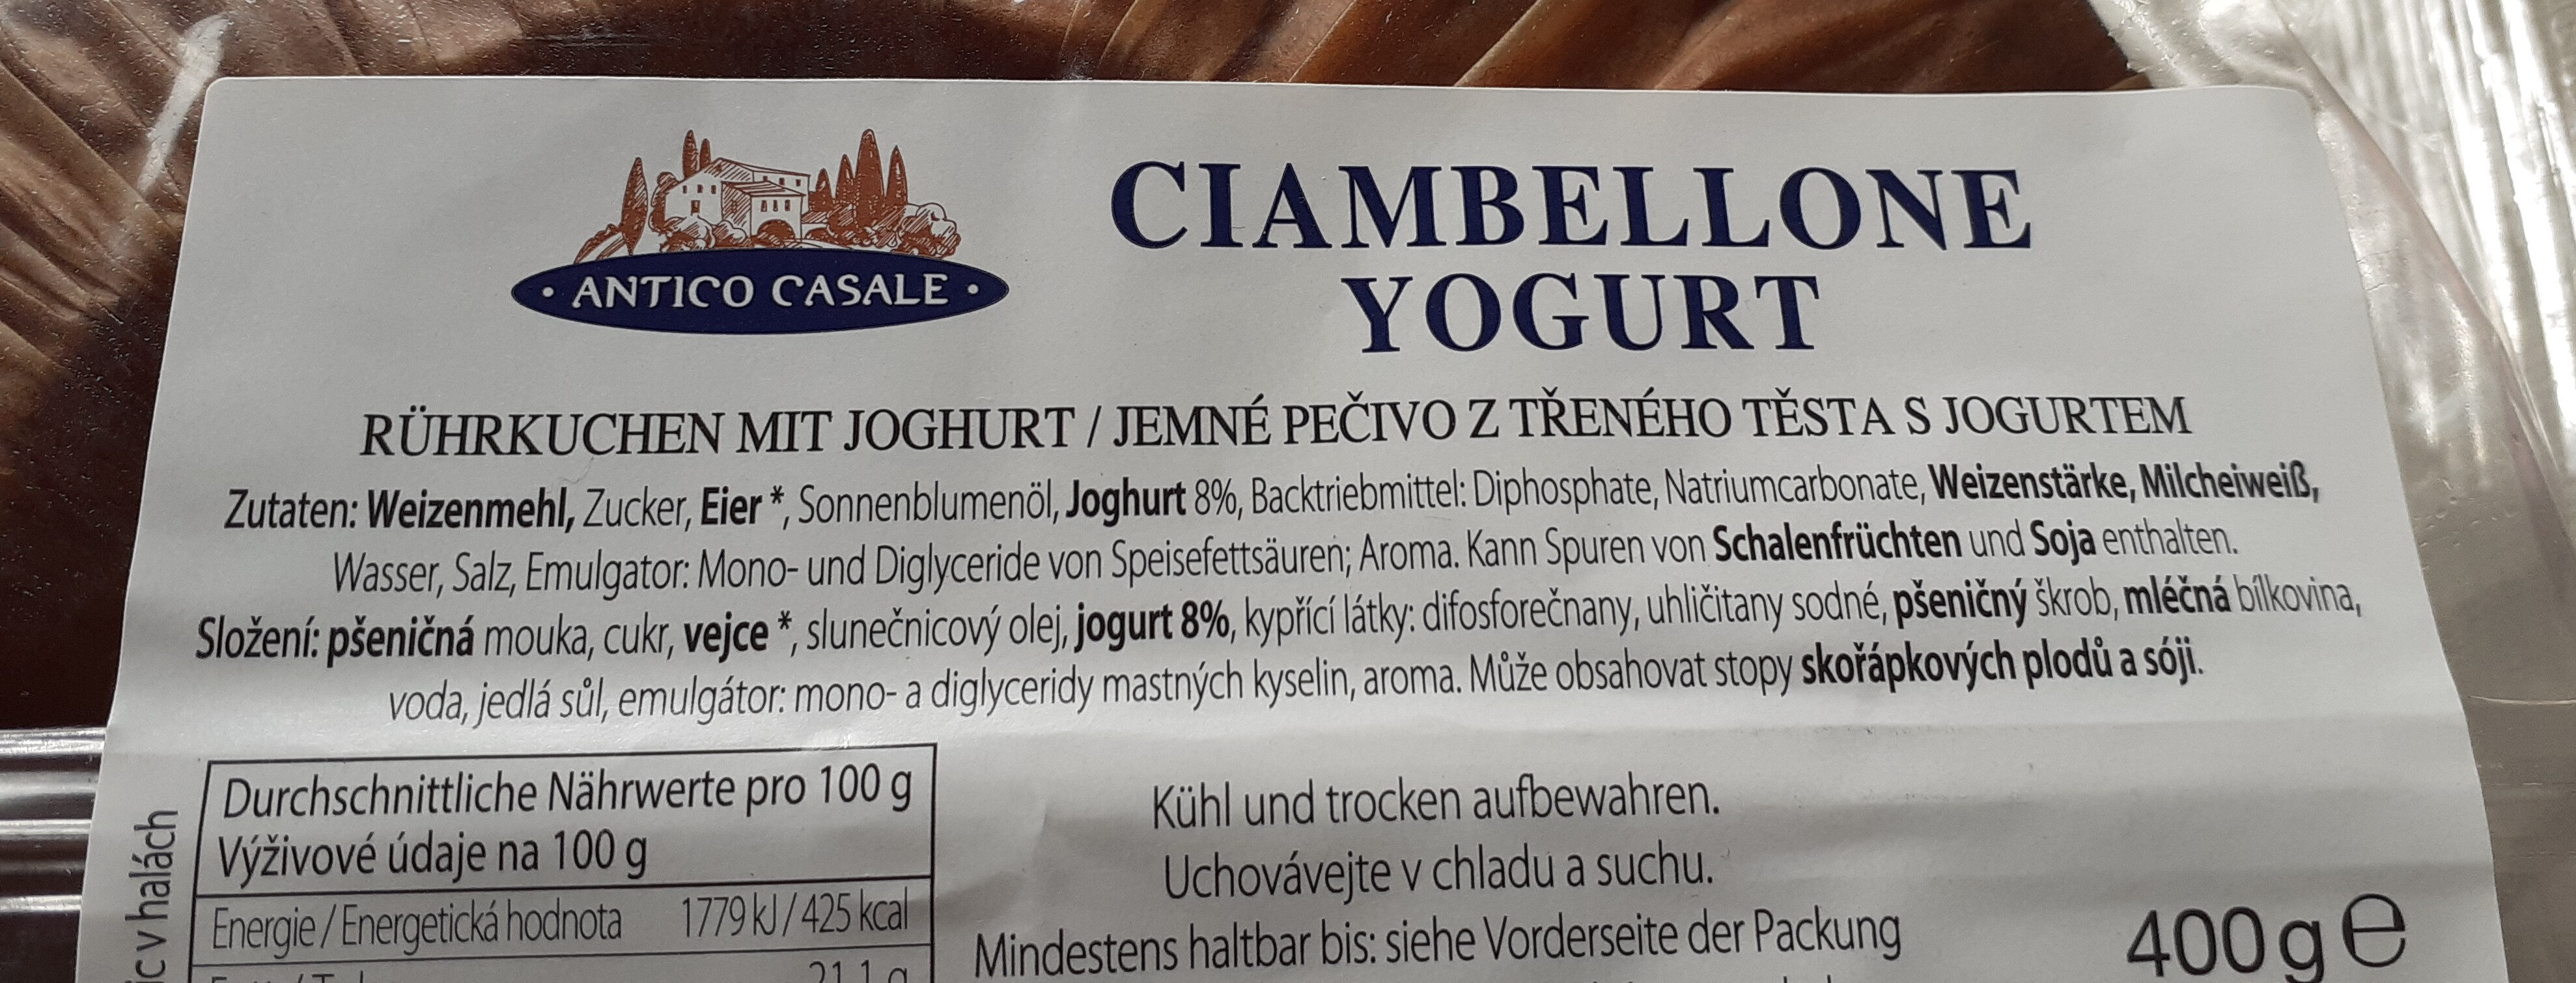 Rührkuchen mit Joghurt - Ingredients - de